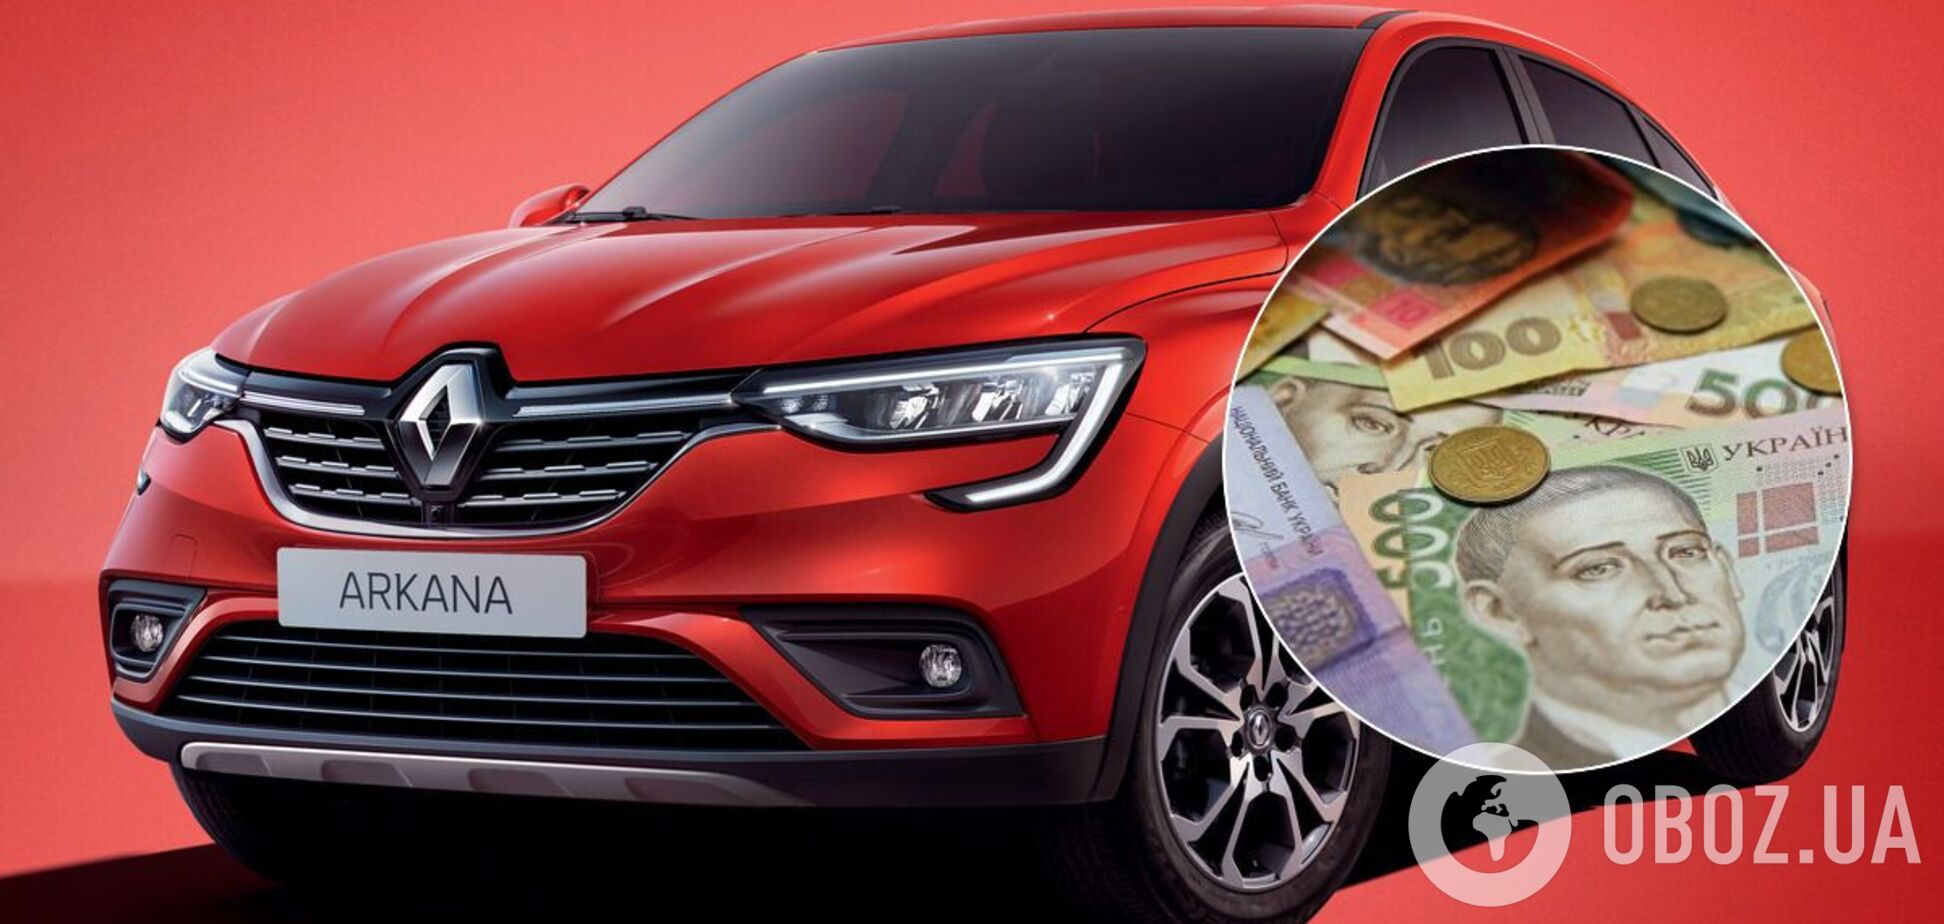 Что можно купить в Украине за цену Renault Arkana